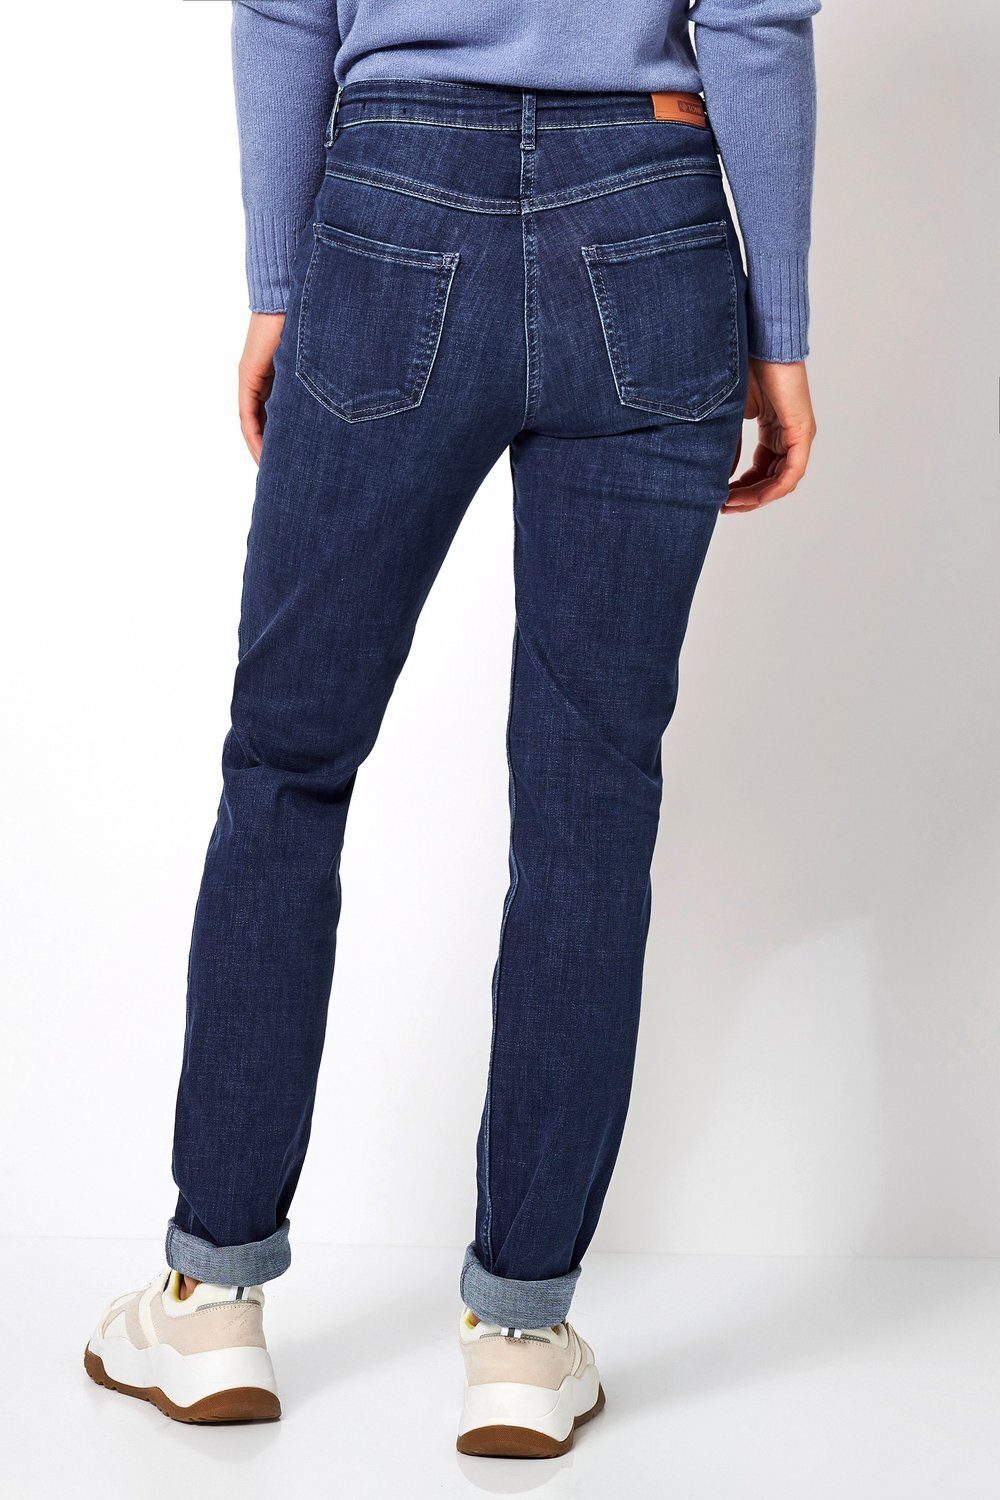 Hüftsattel vorne Shape Slim-fit-Jeans Perfect TONI 564 - mittelblau mit